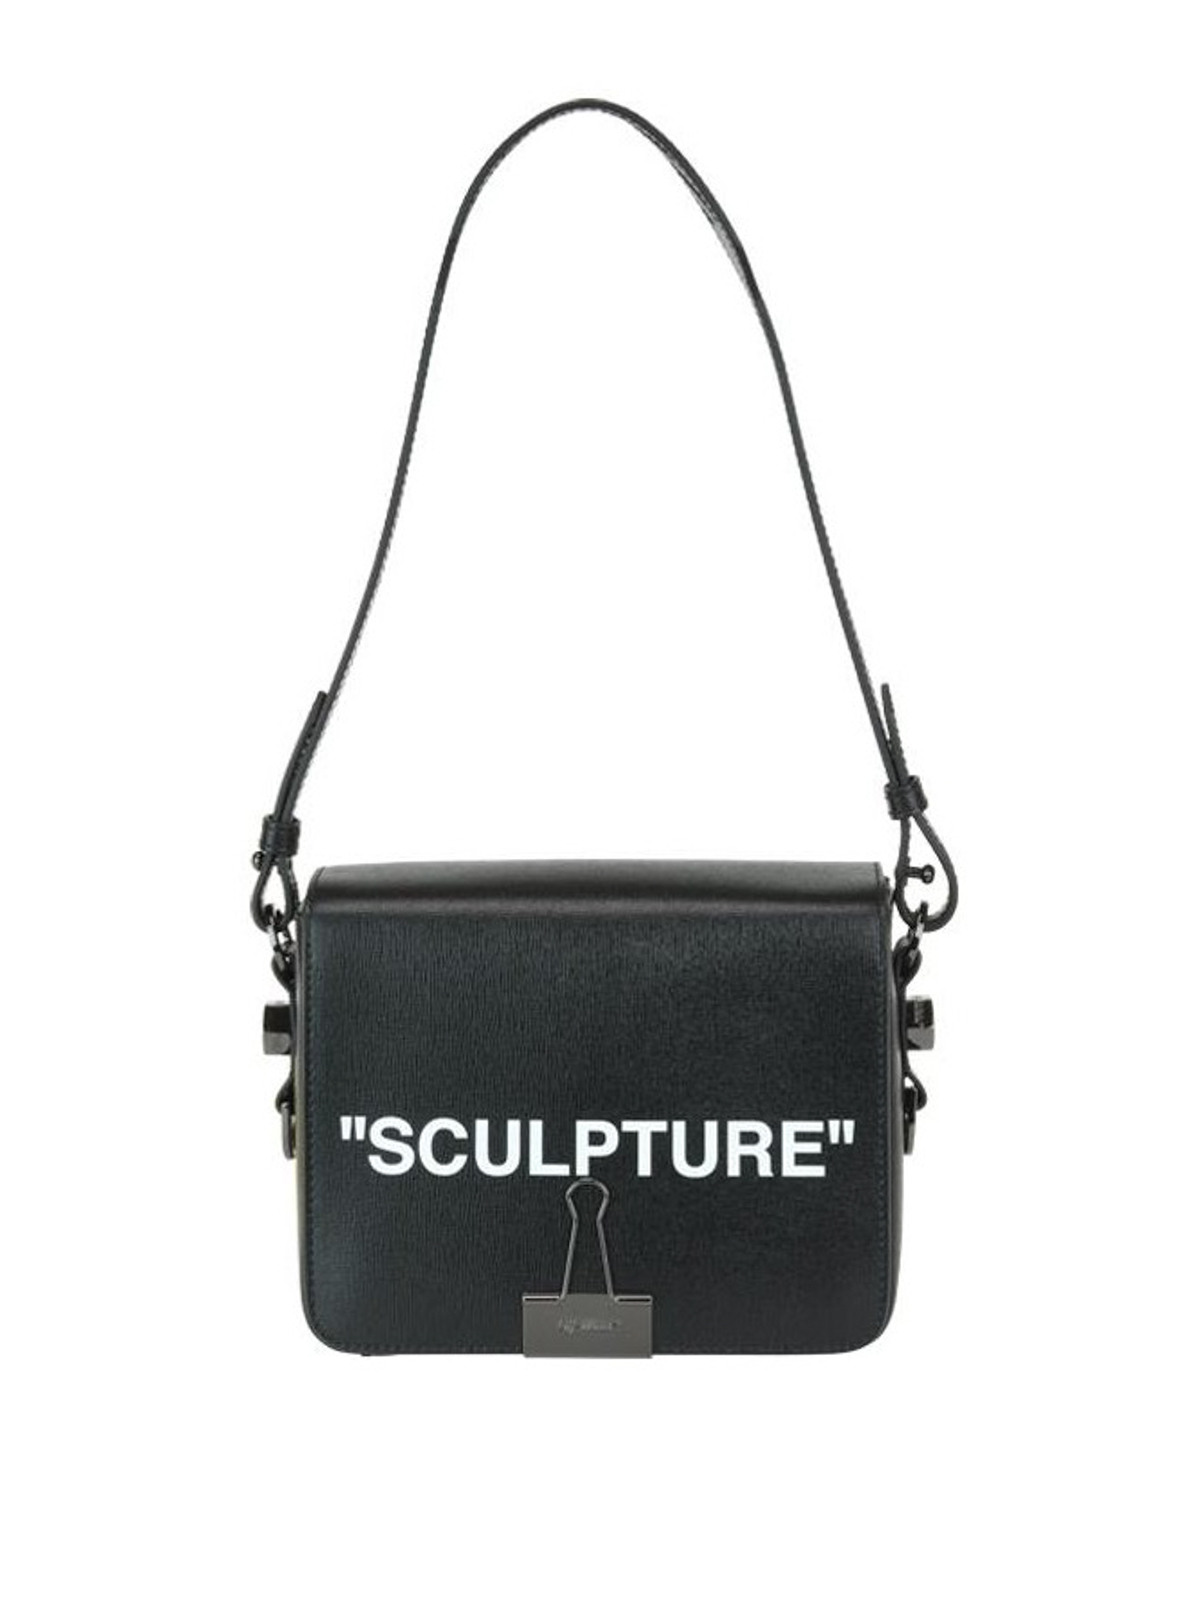 Shoulder bags Off-White - Sculpture black leather squared shoulder